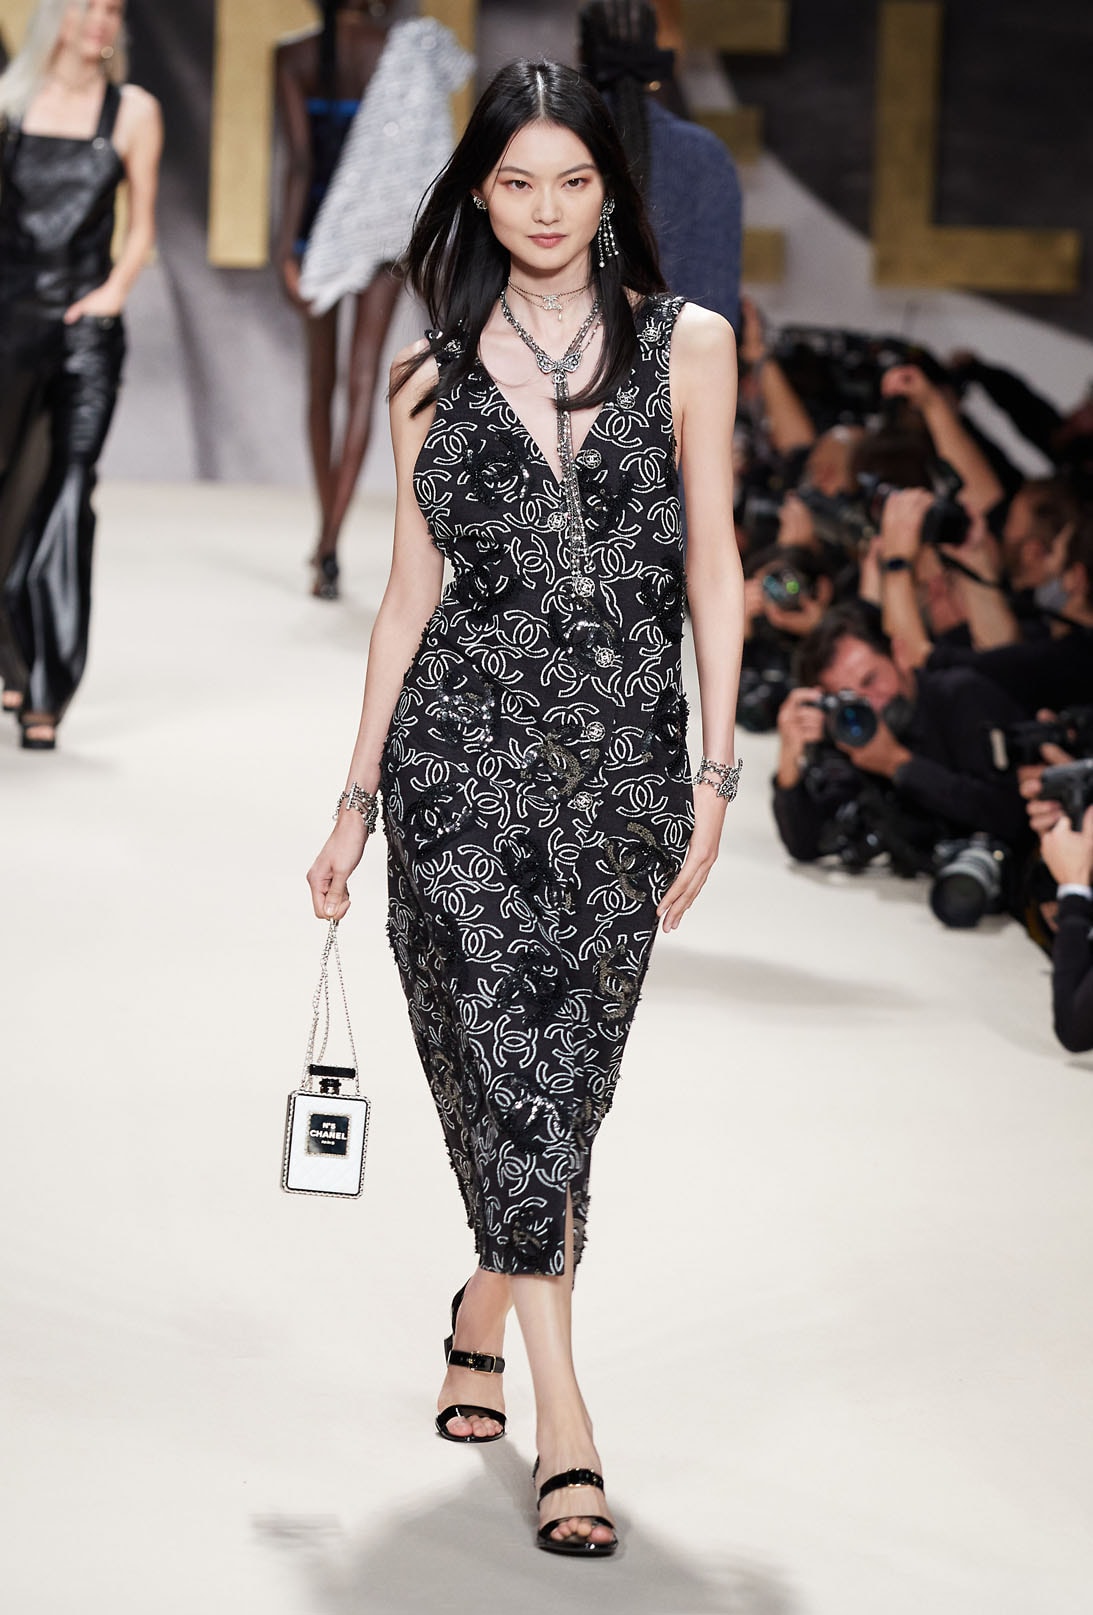 Chanel Spring Summer 2022 Collection Paris Fashion Week Virginie Viard Runway 